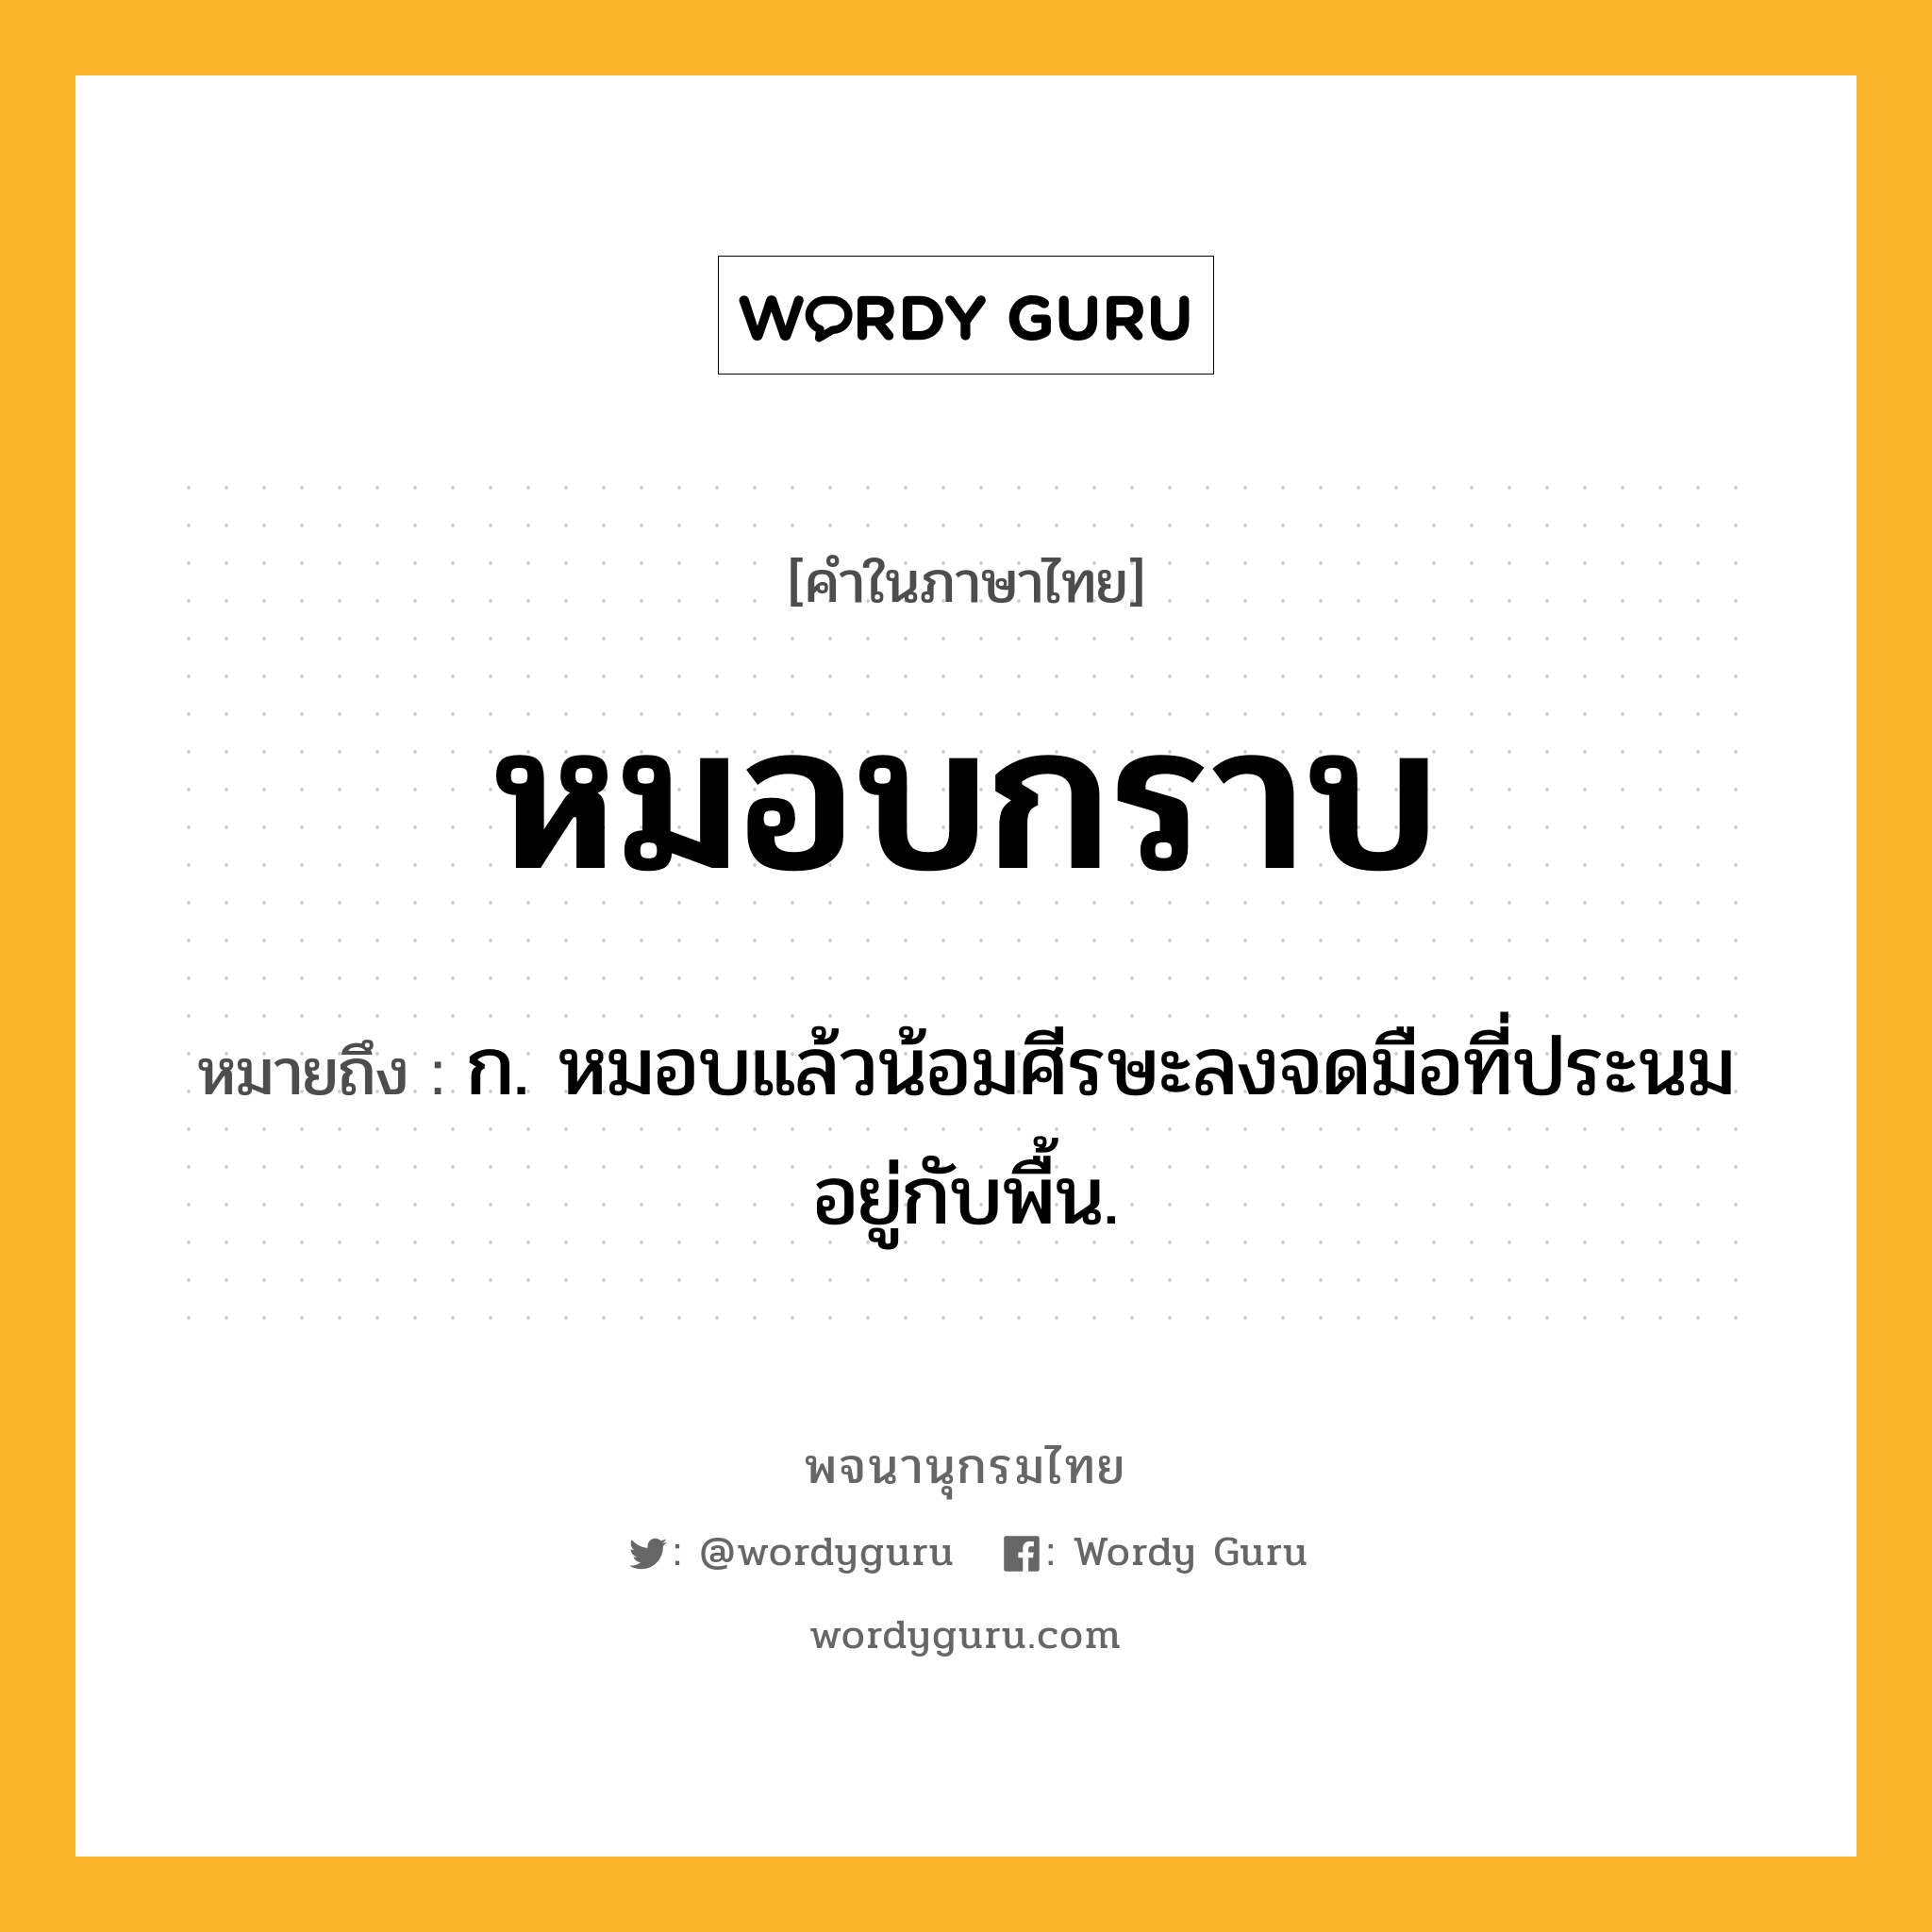 หมอบกราบ ความหมาย หมายถึงอะไร?, คำในภาษาไทย หมอบกราบ หมายถึง ก. หมอบแล้วน้อมศีรษะลงจดมือที่ประนมอยู่กับพื้น.